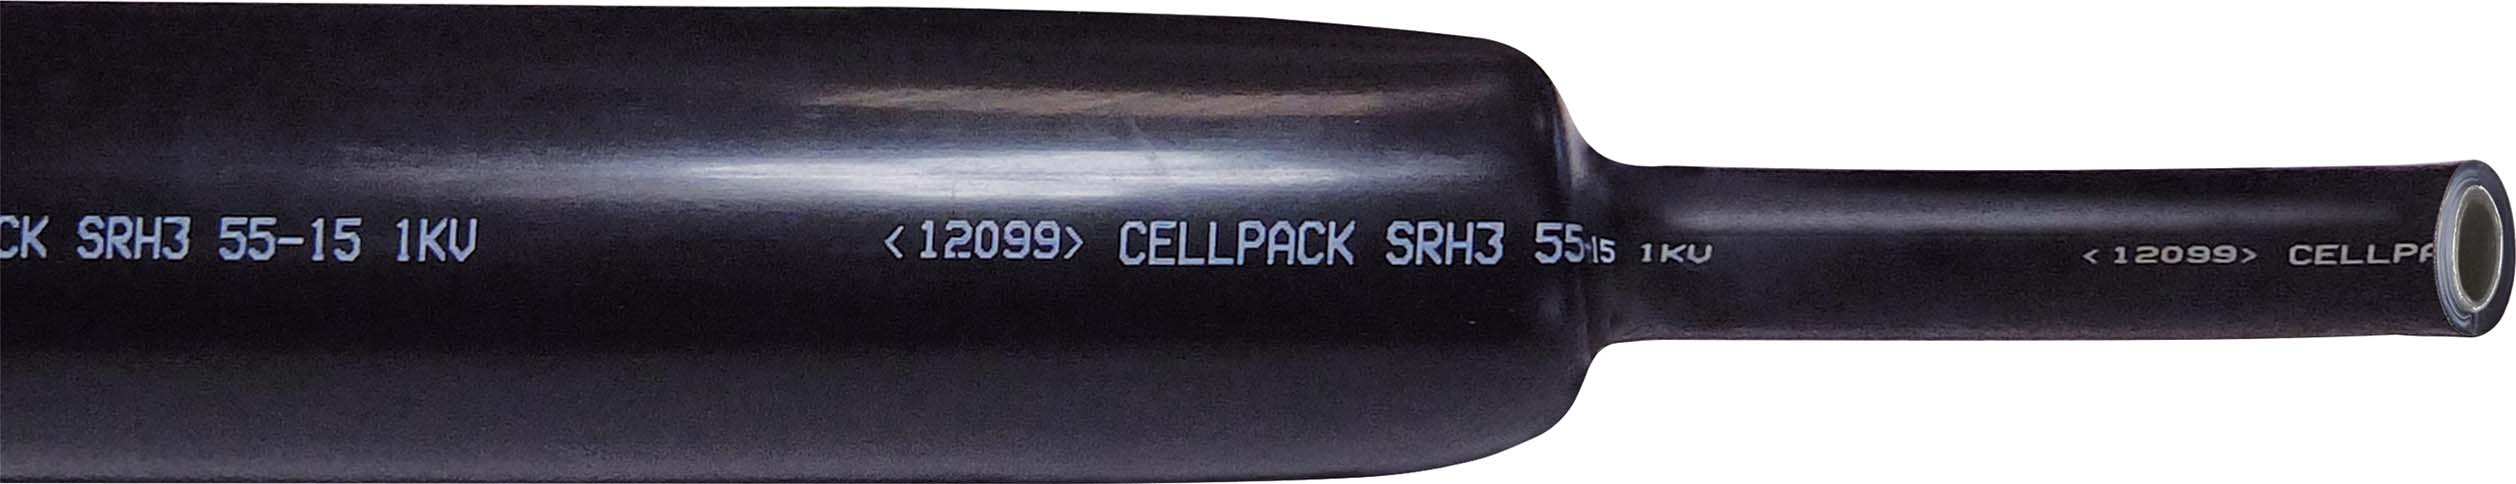 Cellpack 127507 SRH3 33-8/1000 sw Schrumpfschlauch